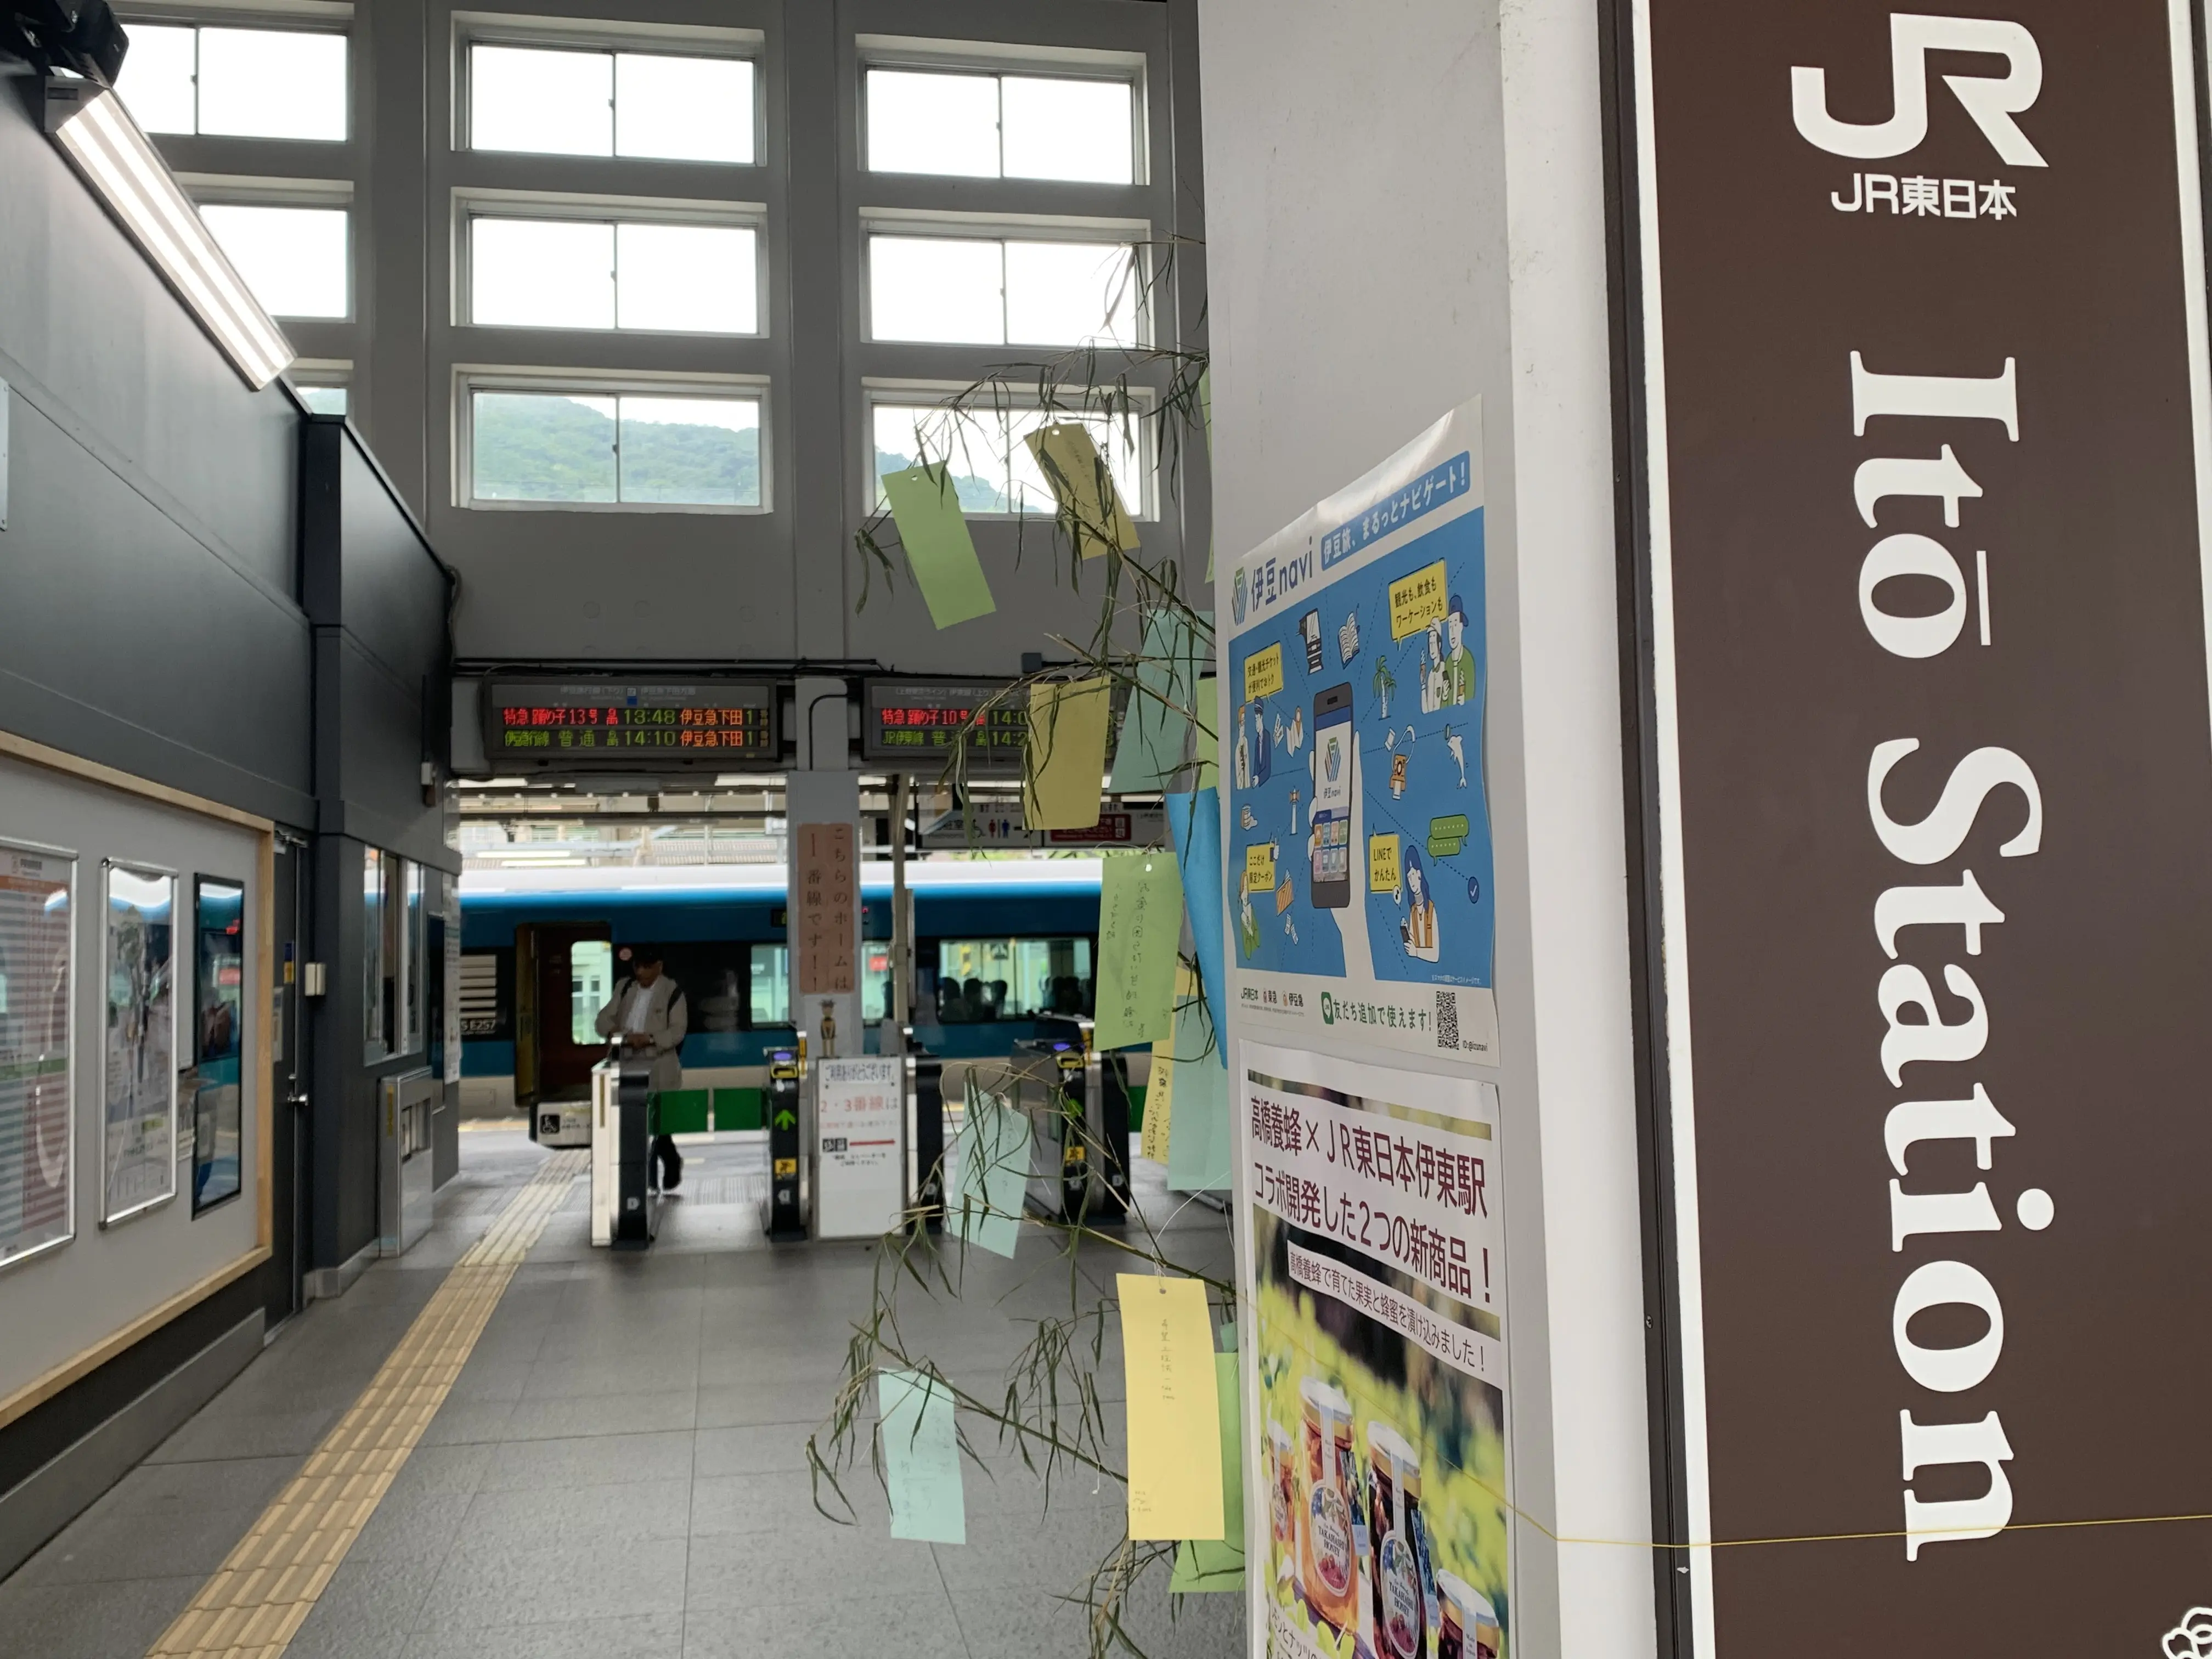 JR伊東駅